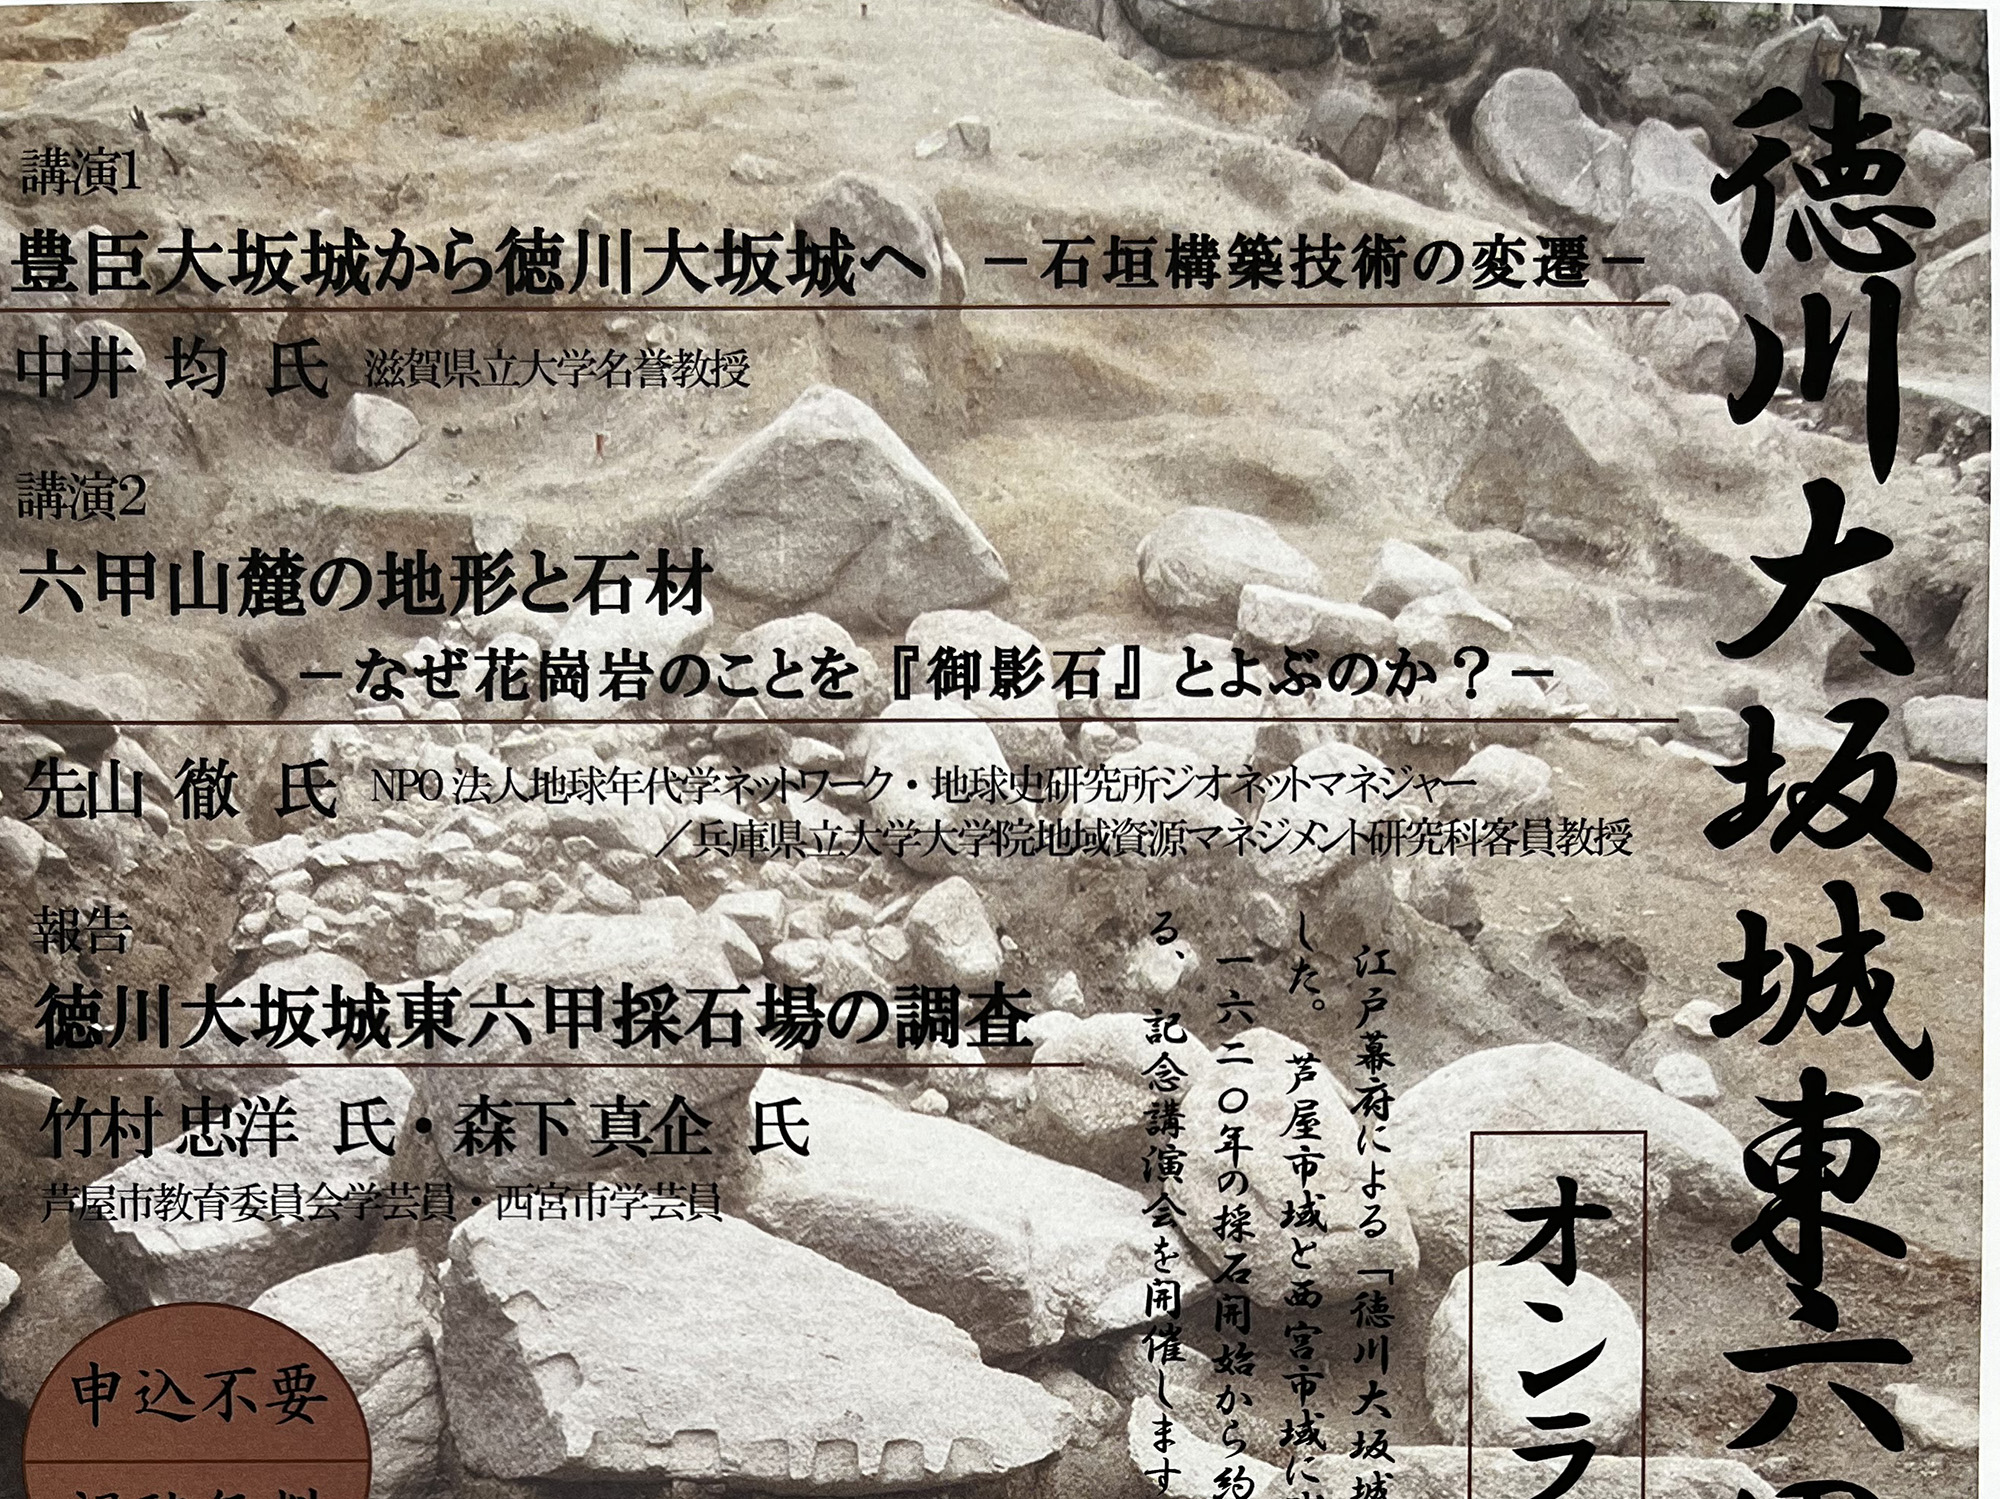 徳川大坂城東六甲採石場400年 オンライン記念講演会